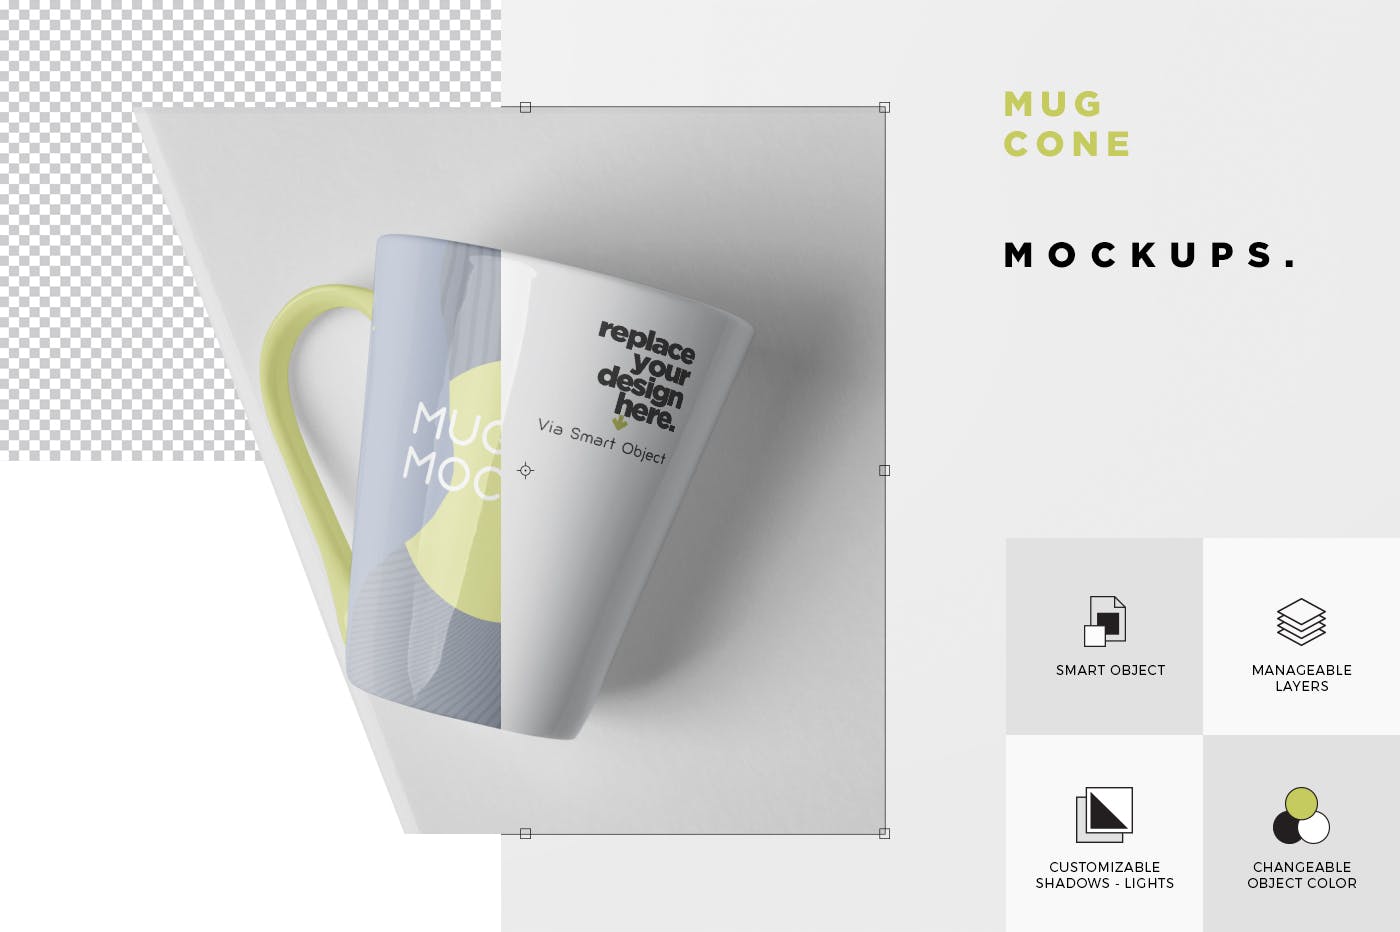 锥形马克杯图案设计蚂蚁素材精选 Mug Mockup – Cone Shaped插图(5)